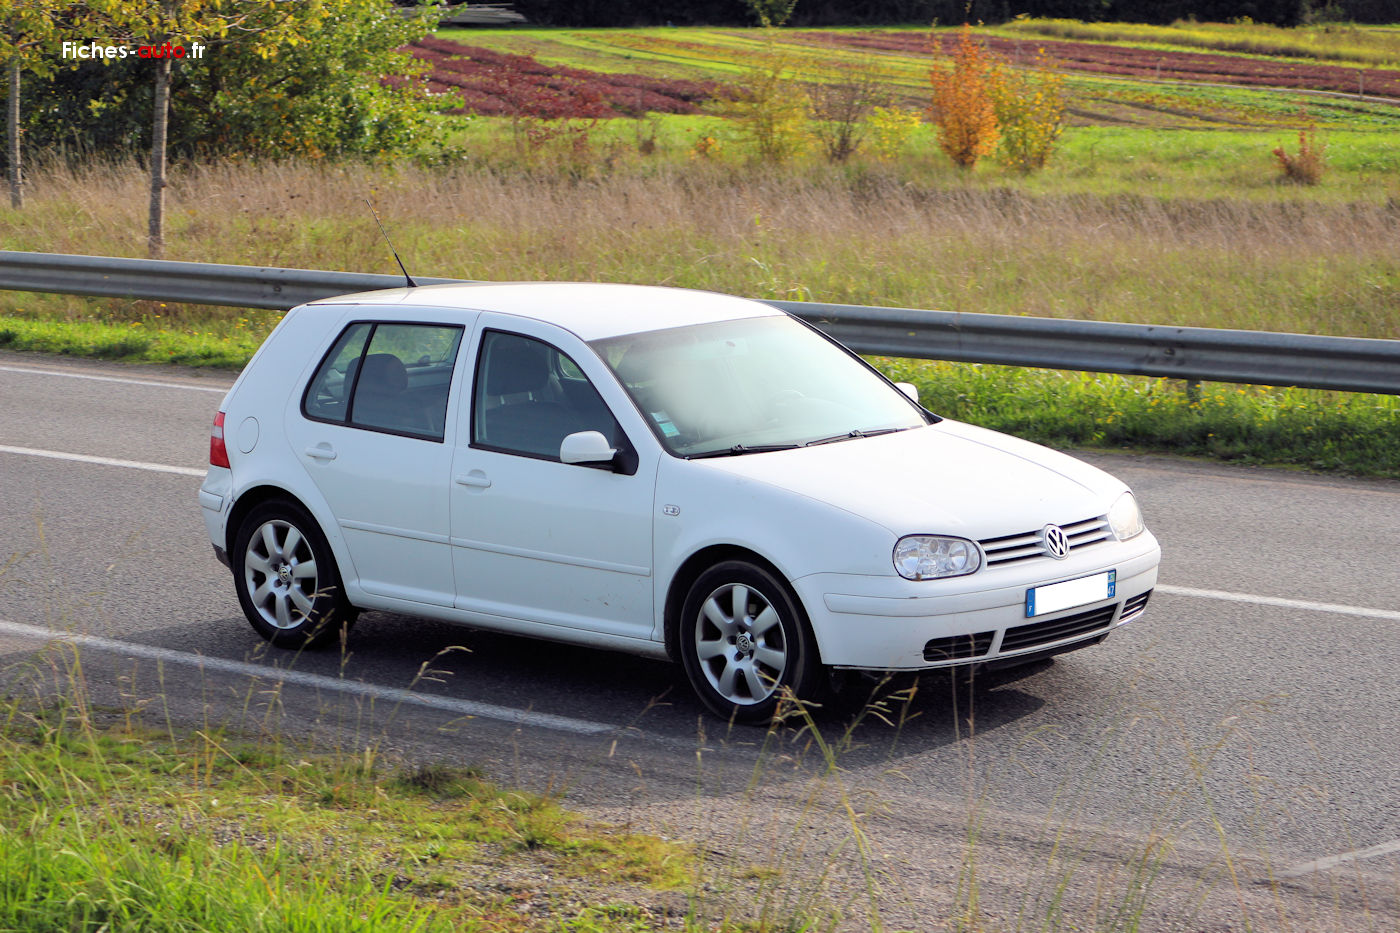 Fiche fiabilité Volkswagen GOLF IV 1998-2003 (+ 528 témoignages)